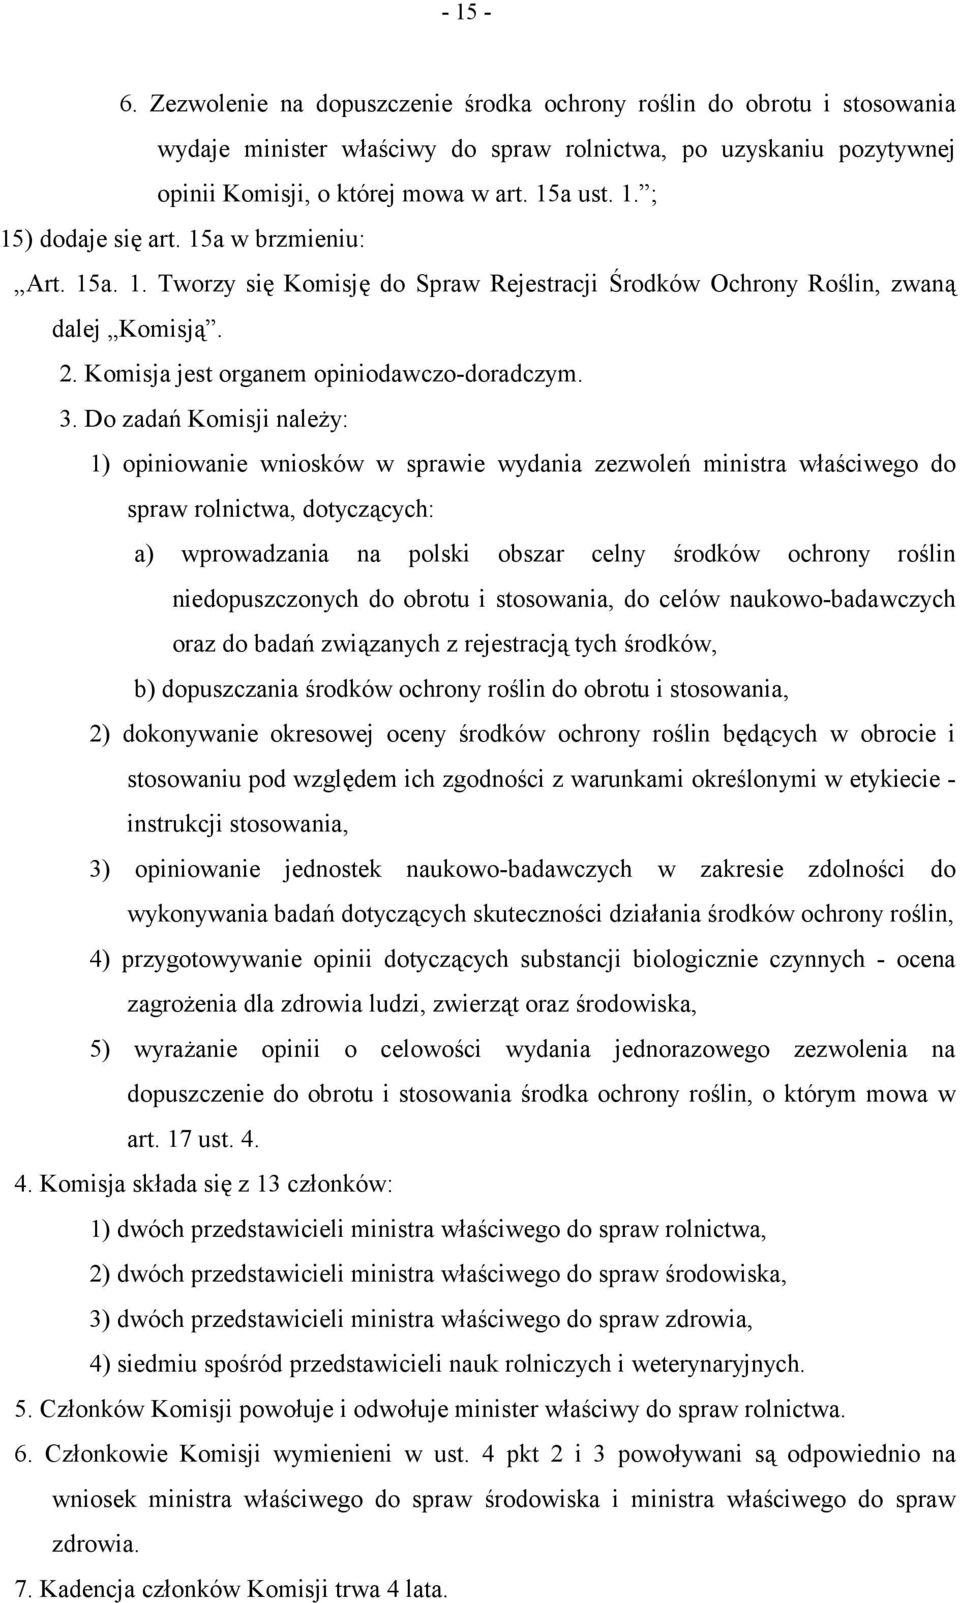 Do zadań Komisji należy: 1) opiniowanie wniosków w sprawie wydania zezwoleń ministra właściwego do spraw rolnictwa, dotyczących: a) wprowadzania na polski obszar celny środków ochrony roślin